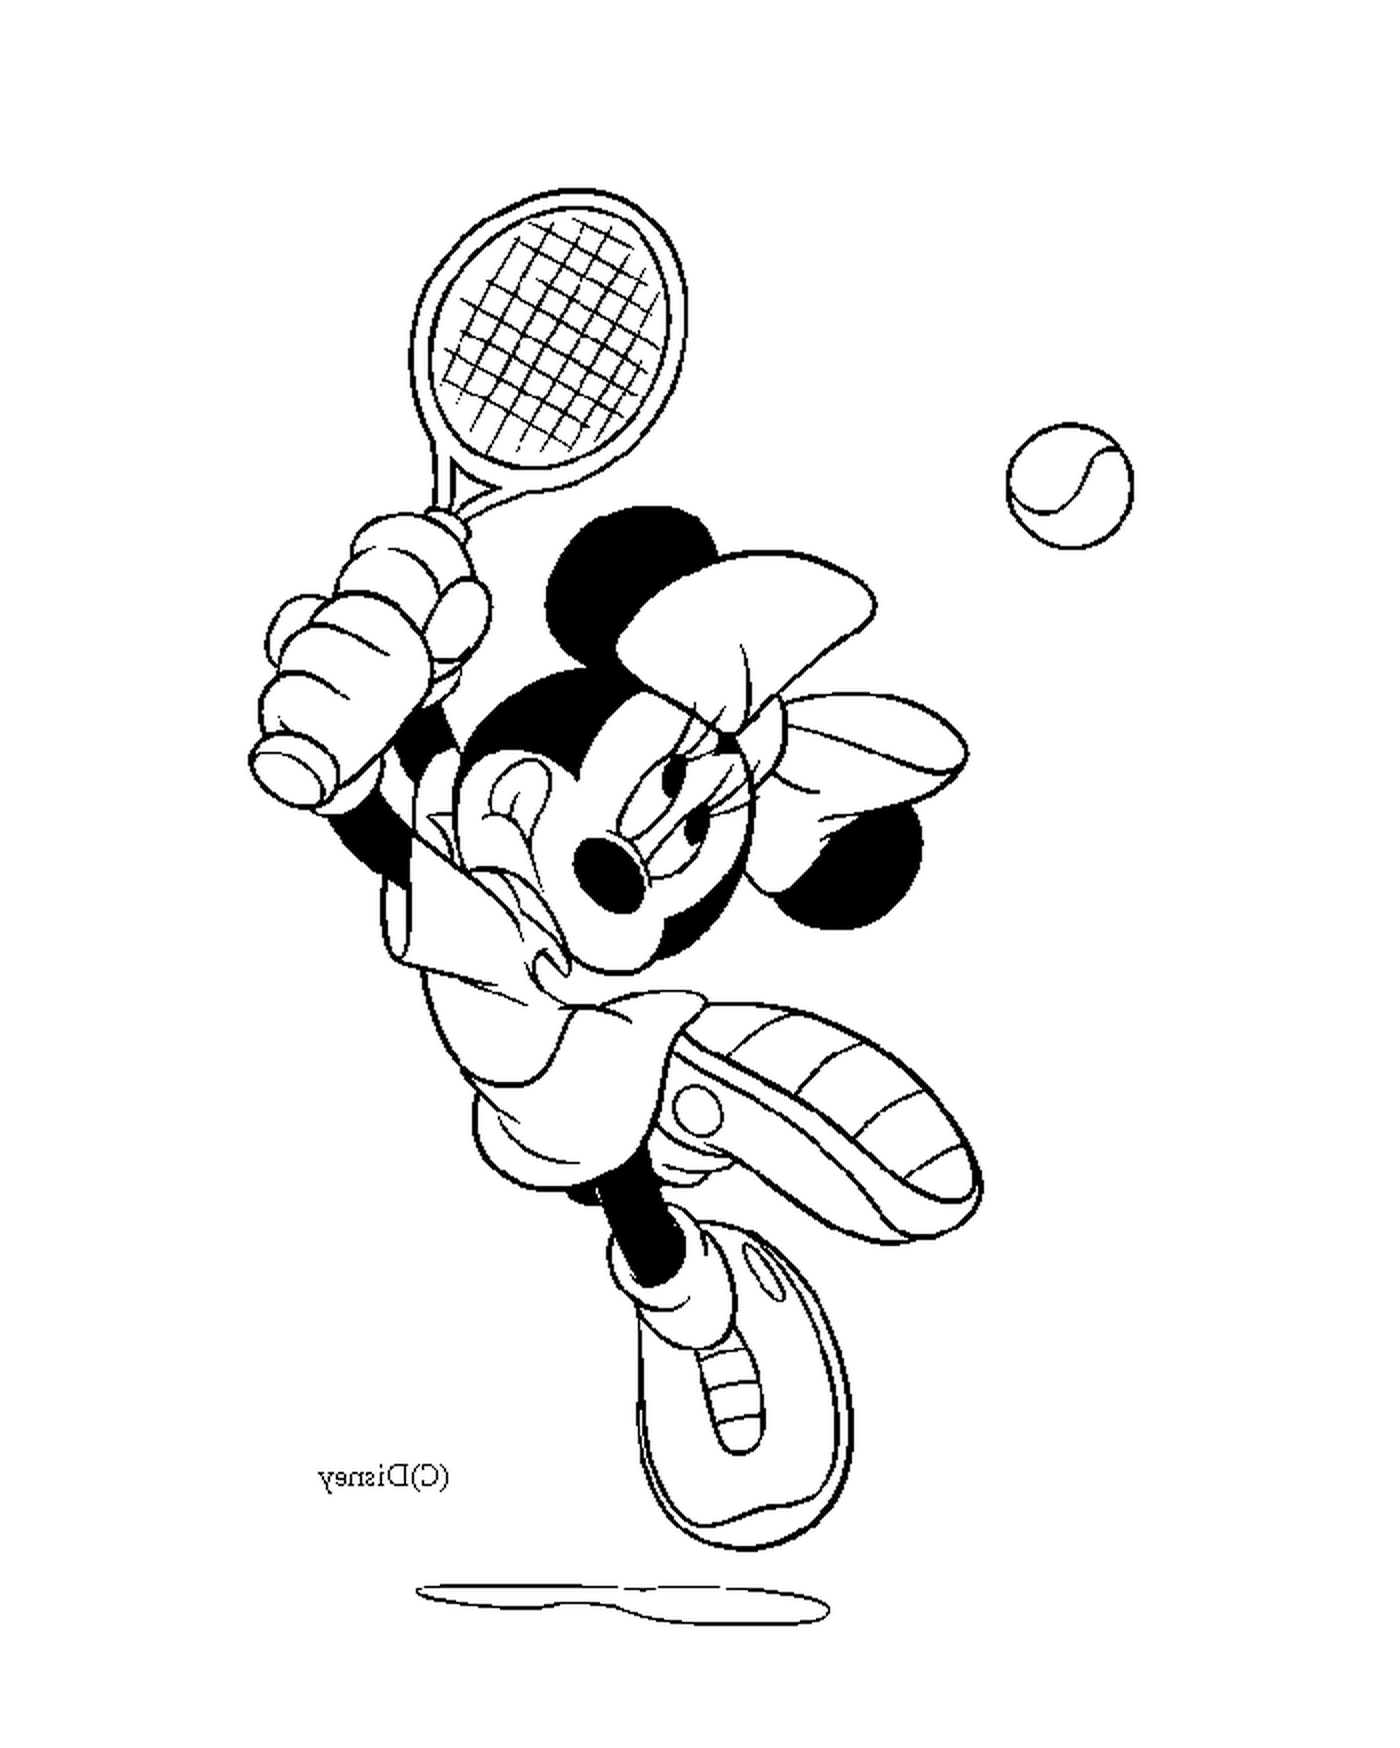  明妮打网球 